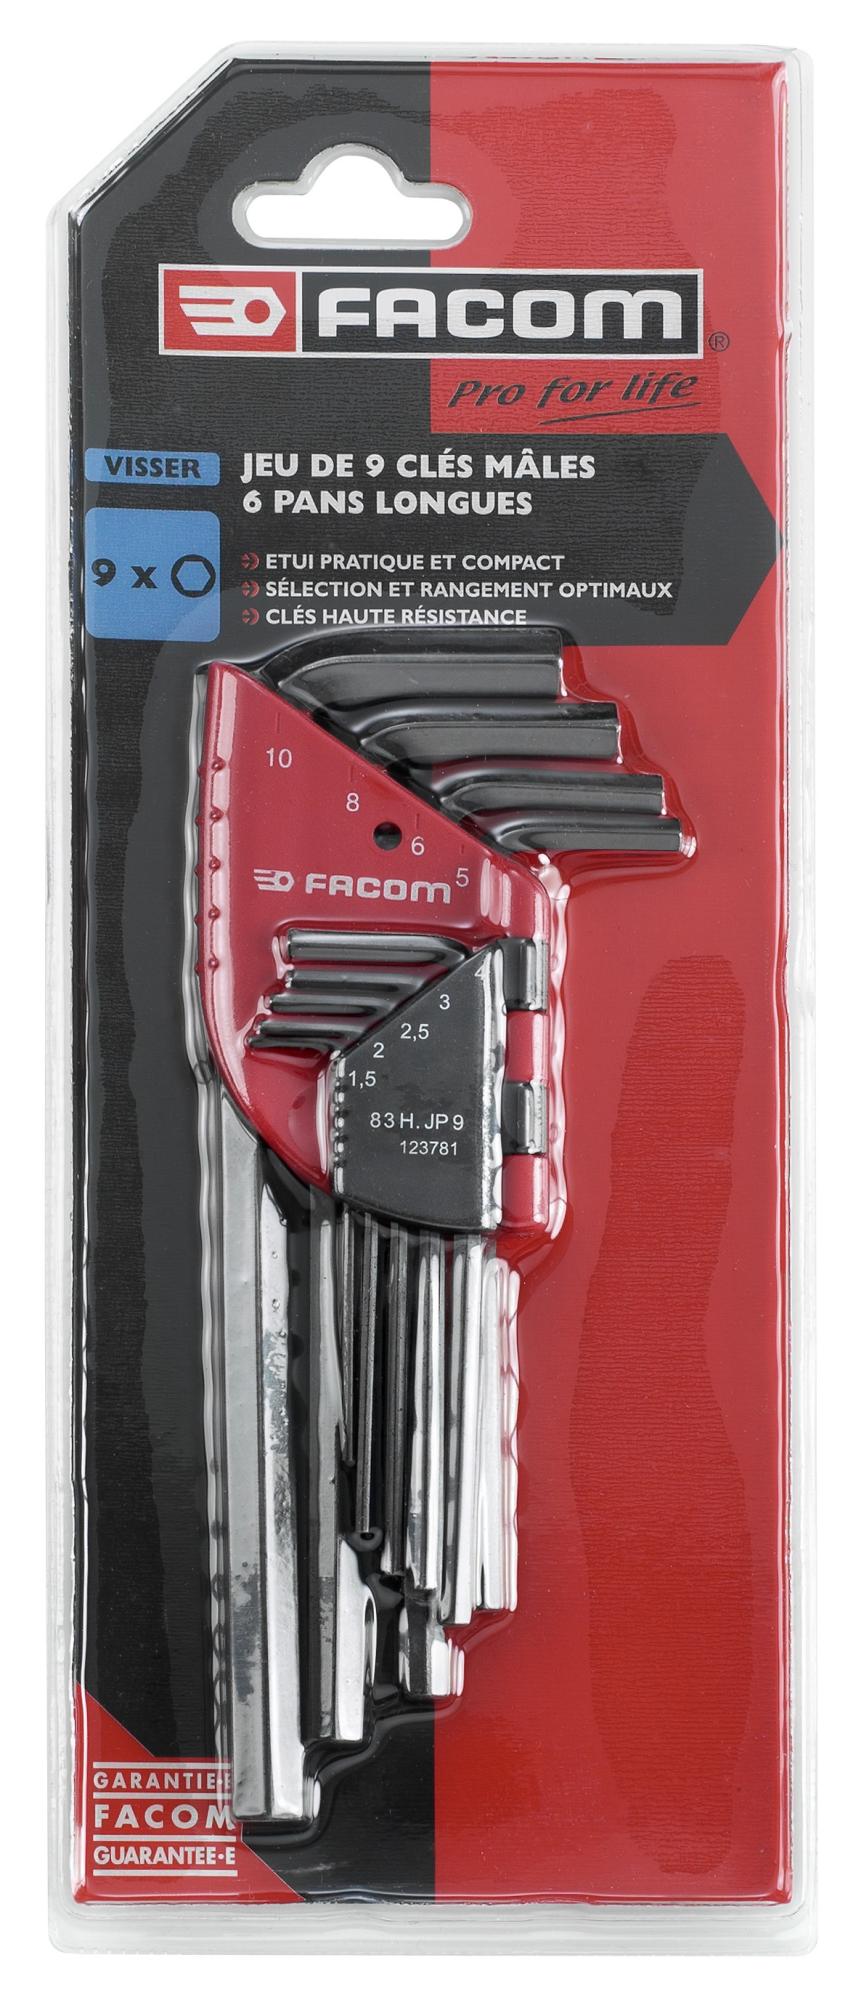 Facom 83H.JP9APG Set mit 9 langen Innensechskantschlüsseln 